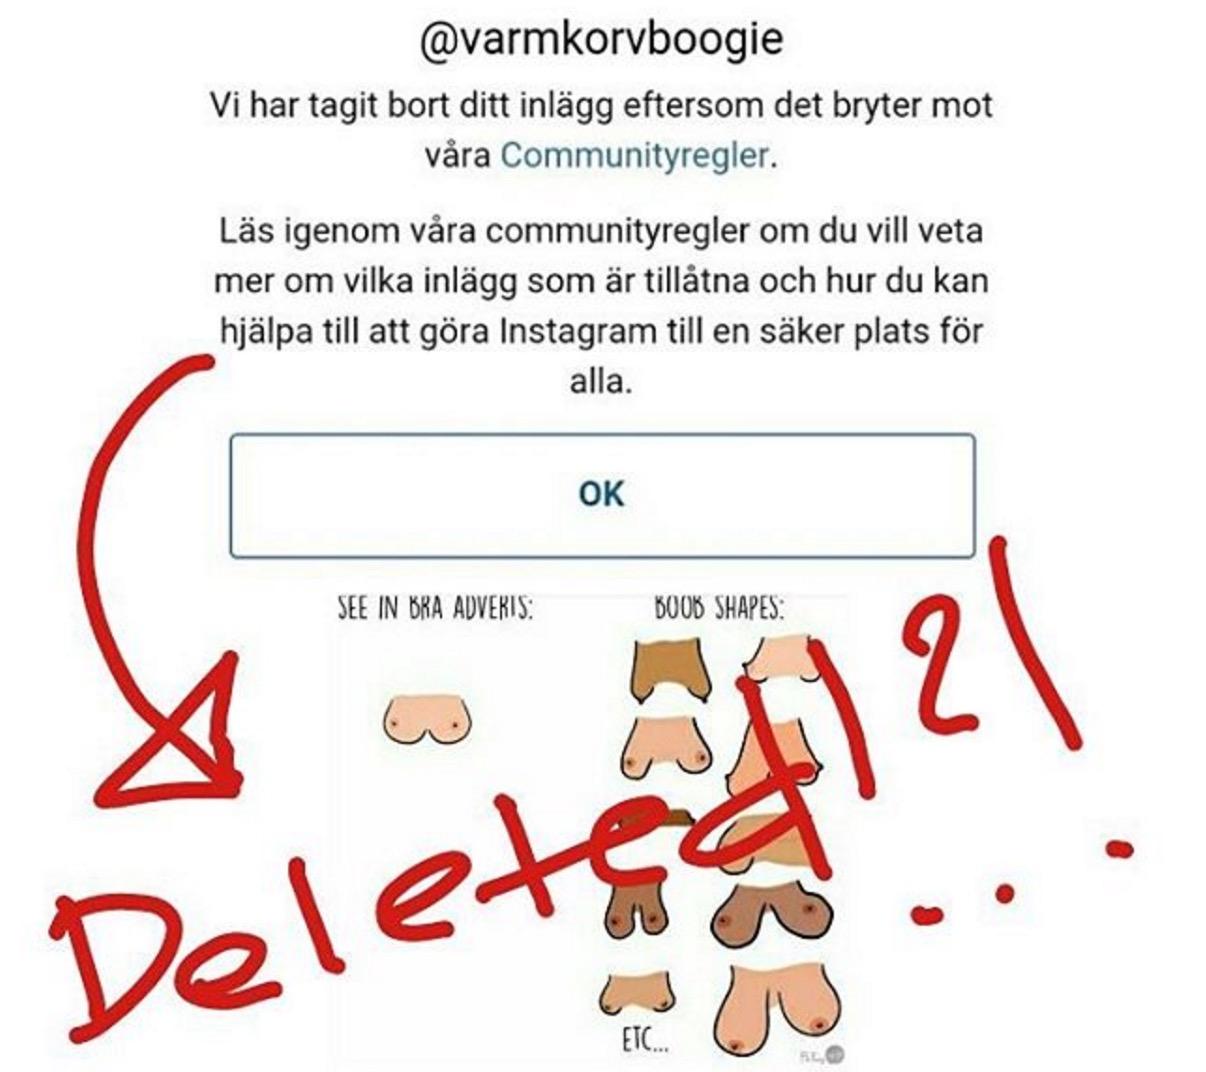 Det var när Annika Ström laddade upp bilden på tecknade bröst som Instagram valde att plocka ned den.